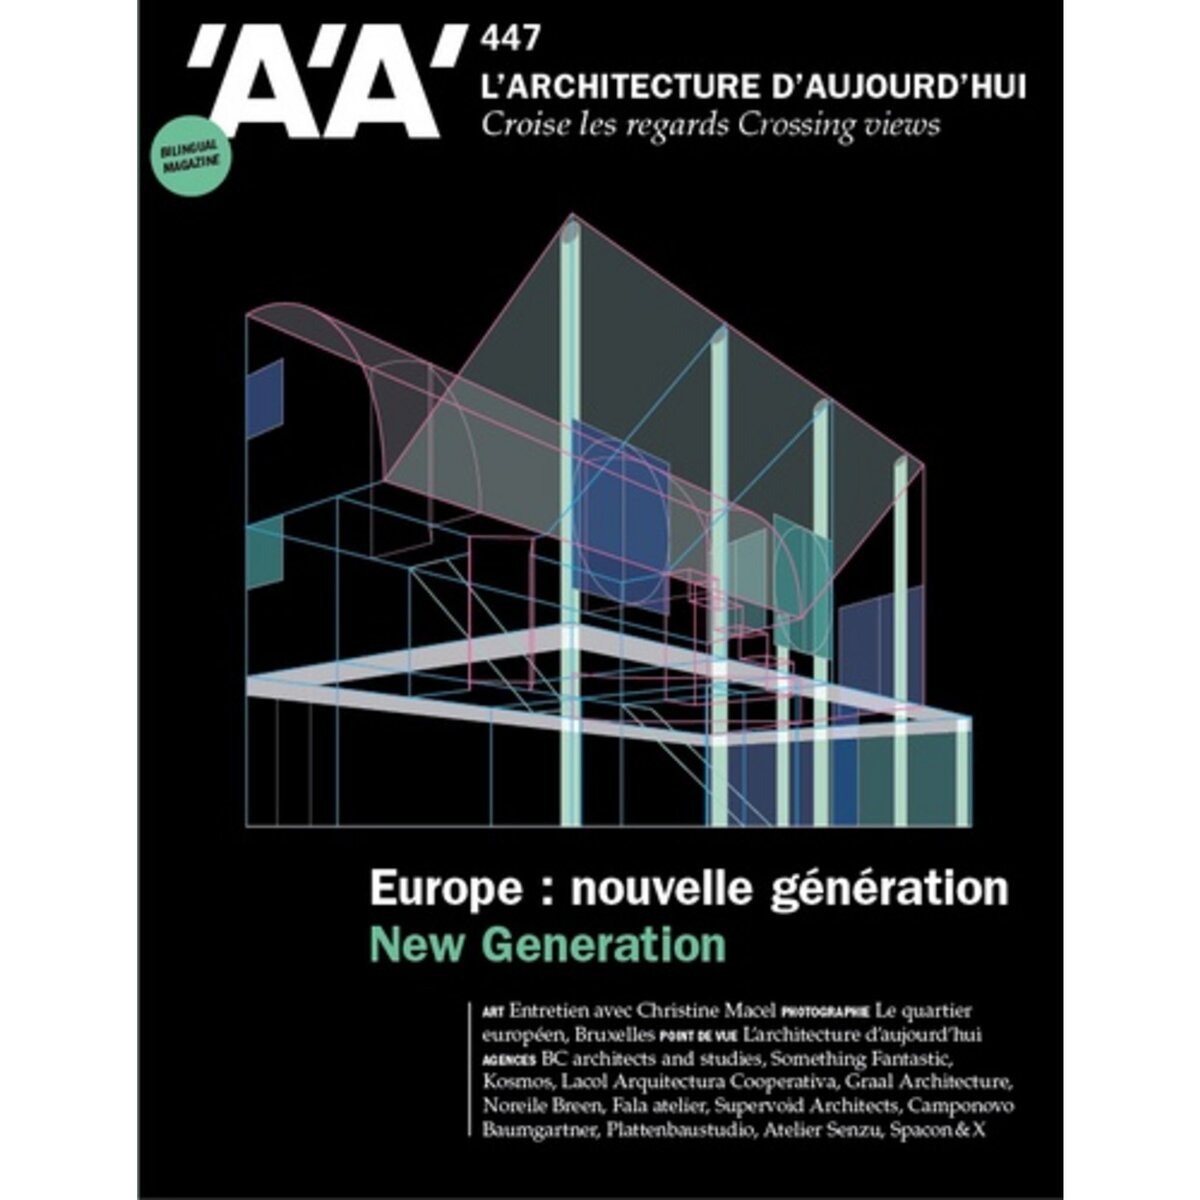  L'ARCHITECTURE D'AUJOURD'HUI N° 447, FEVRIER 2022 : NOUVELLE GENERATION, Archipress